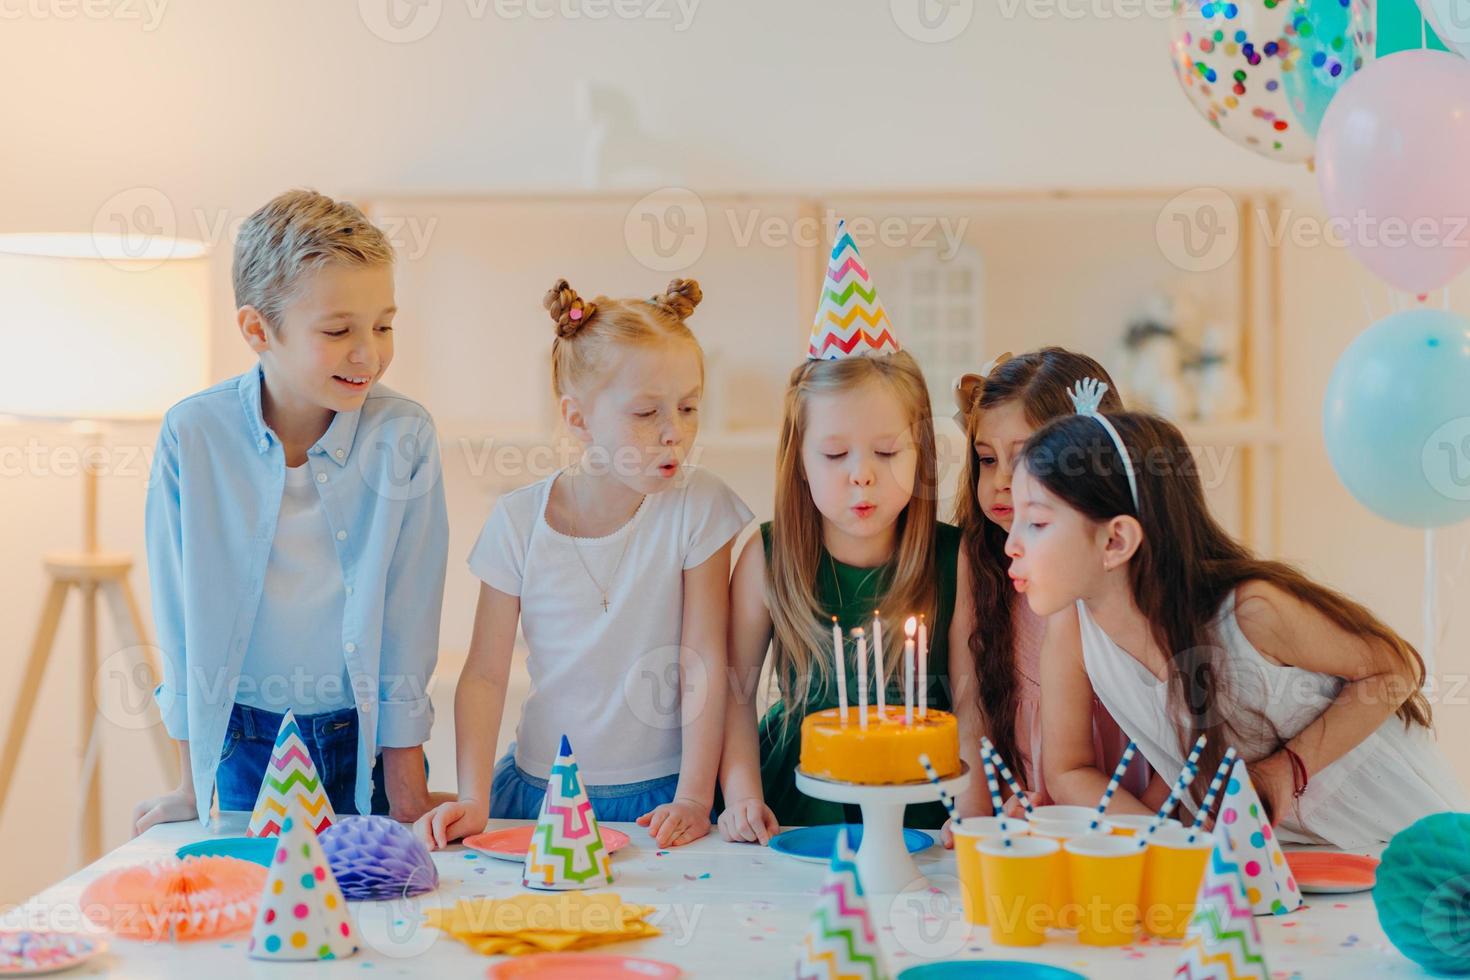 los niños pequeños celebran la fiesta de cumpleaños, soplan velas en el pastel, se reúnen en la mesa festiva, tienen buen humor, disfrutan pasar tiempo juntos, piden deseos, usan sombreros de fiesta, posan en el interior con globos inflados foto